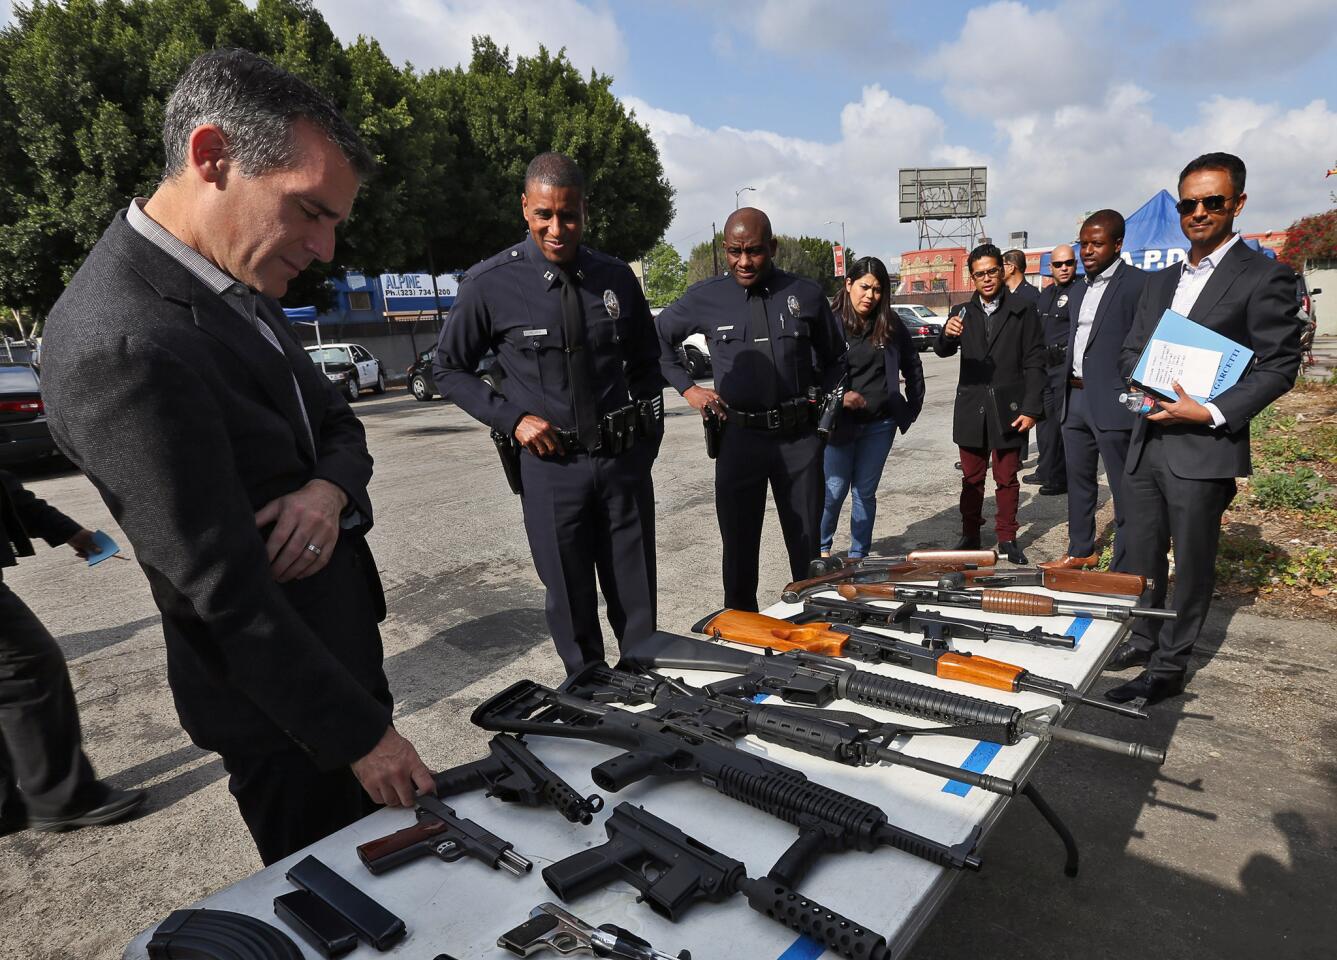 L.A. gun buyback program